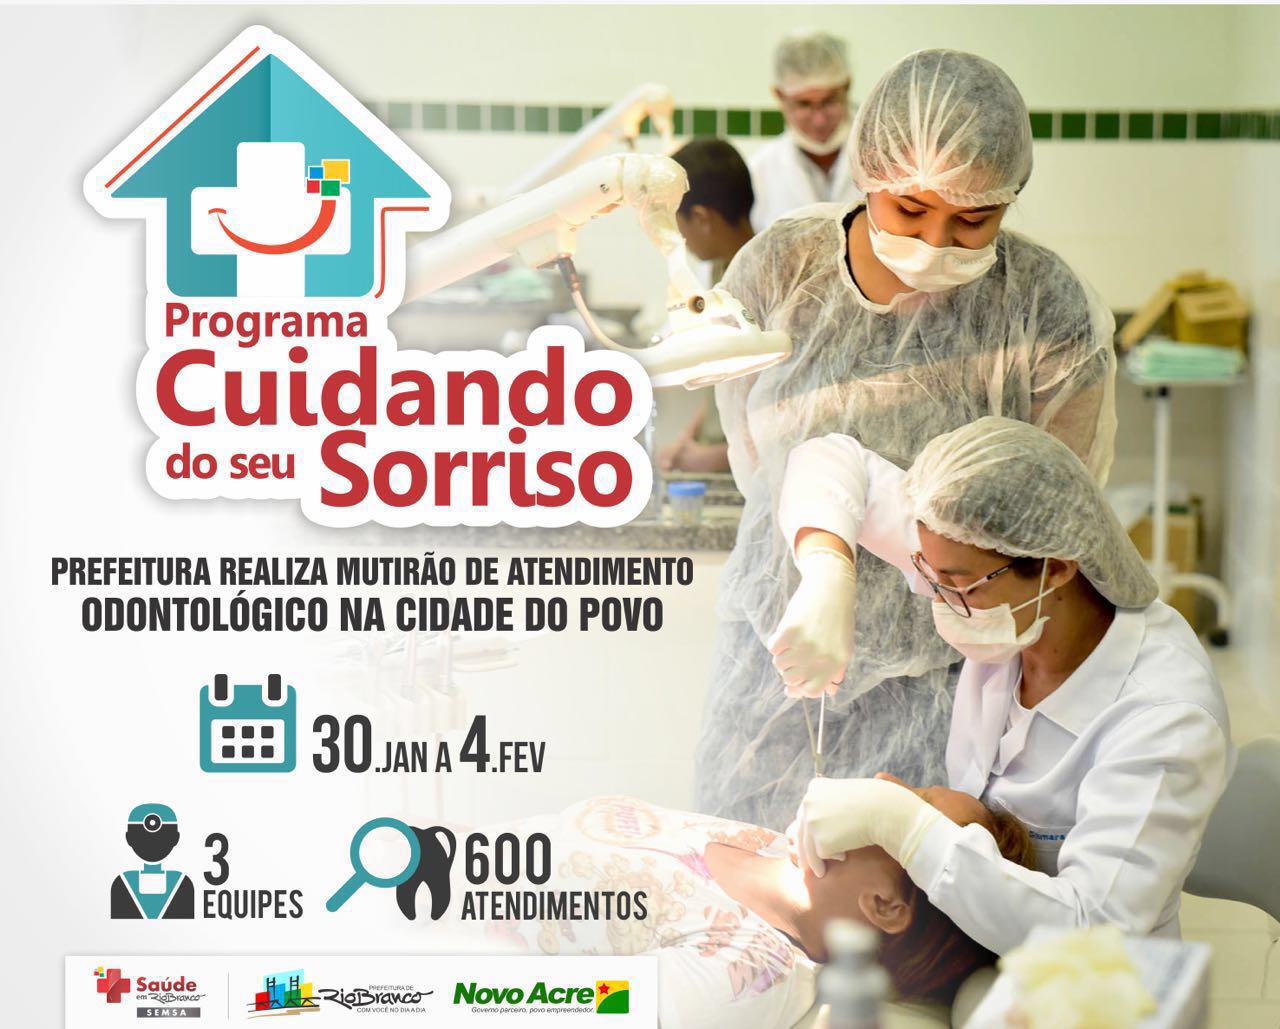 You are currently viewing “Programa Cuidando do seu Sorriso” Prefeitura realiza mutirão de atendimento ODONTOLÓGICO na Cidade do Povo! 30/JAN a 4/FEV…